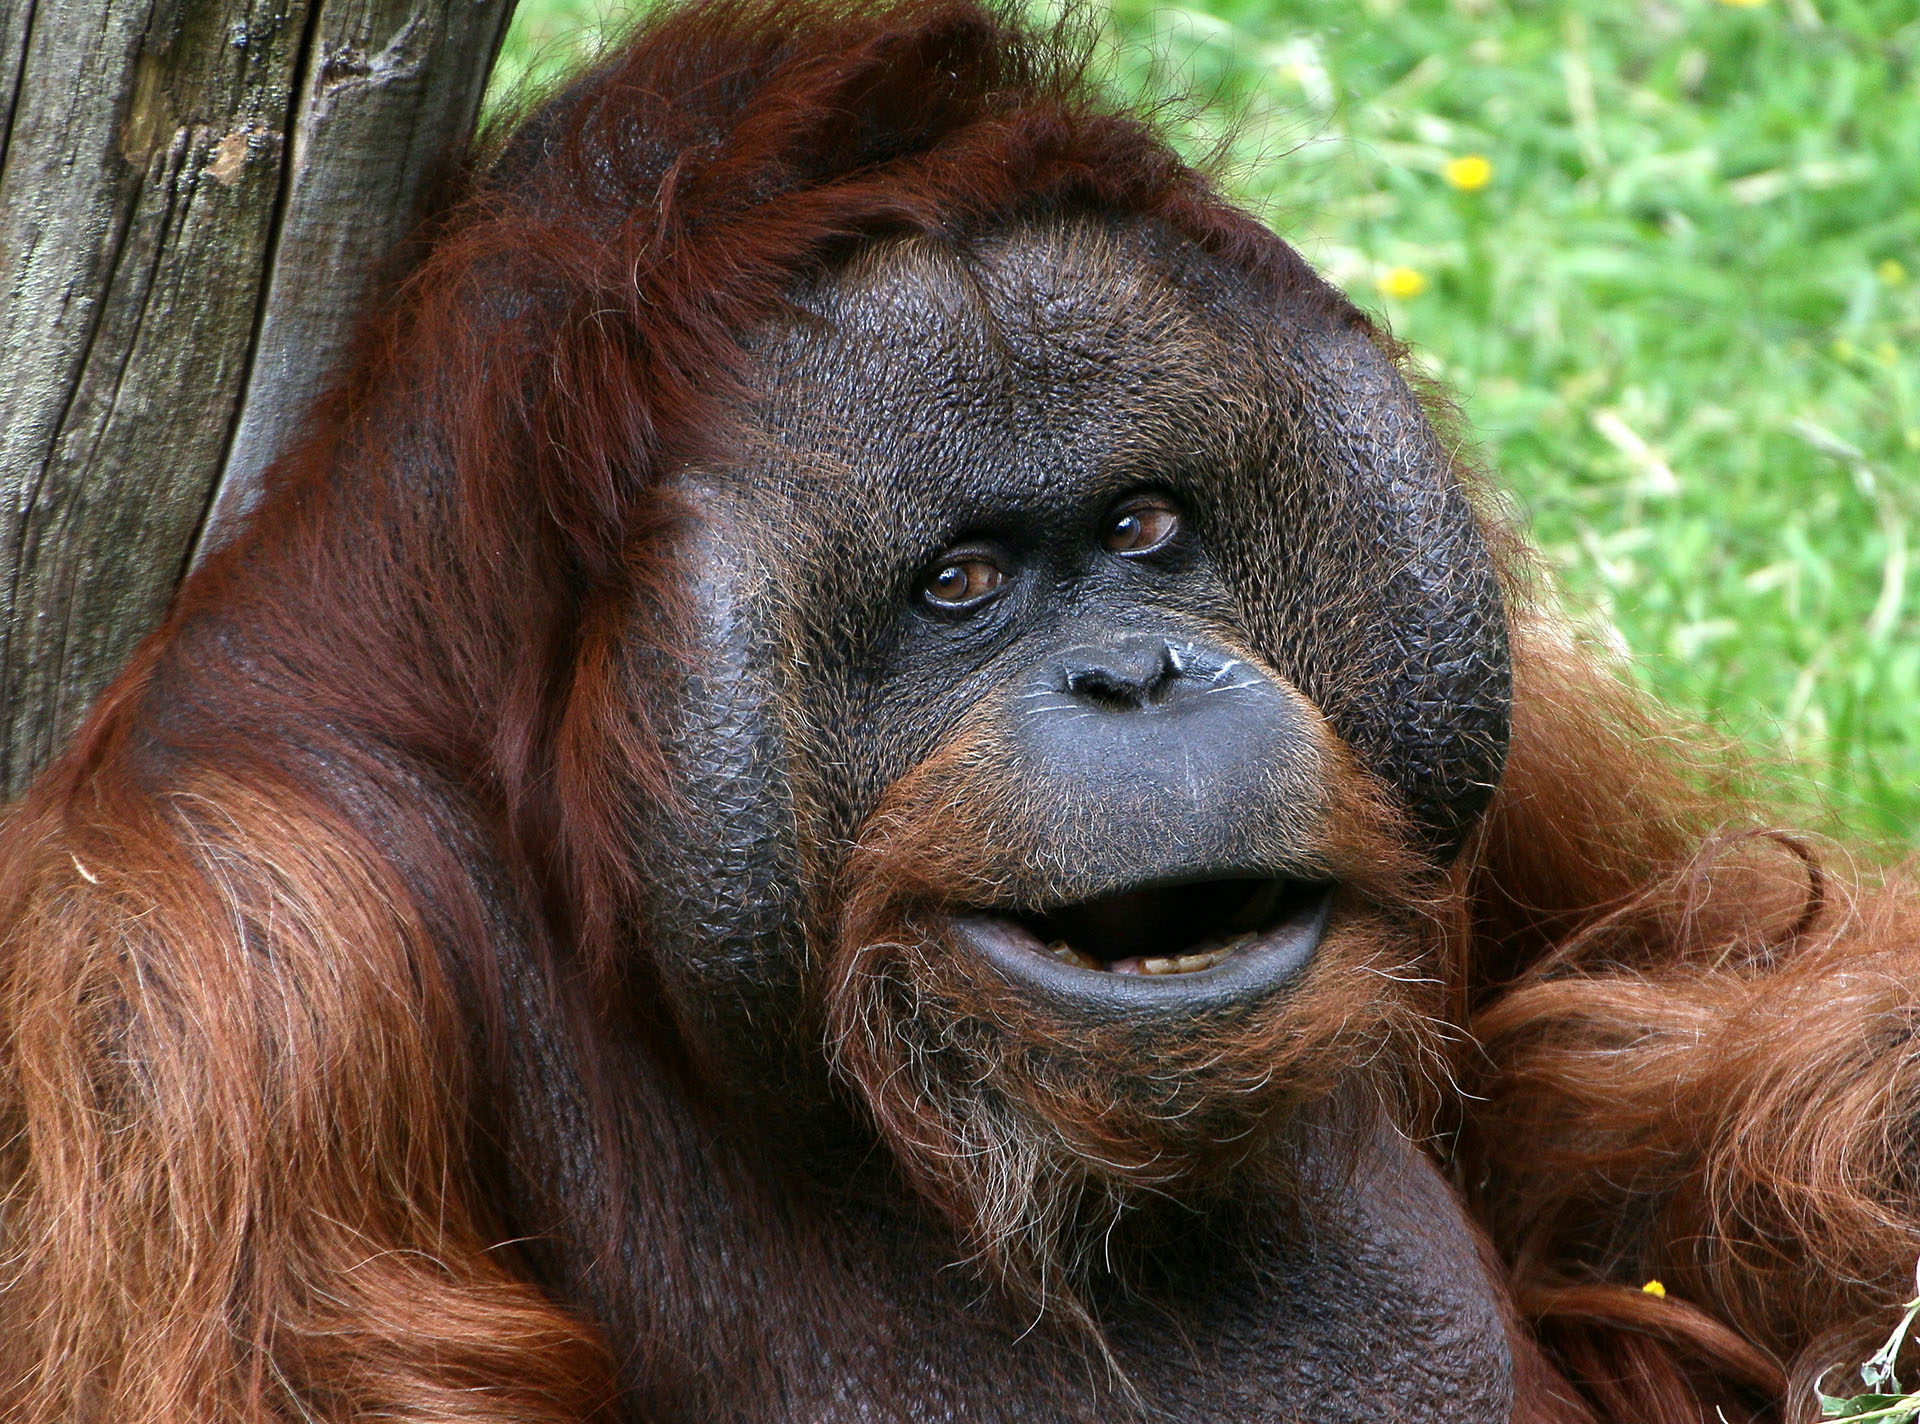 "Las madres orangutanas exhiben una flexibilidad conductual significativa a nivel individual. Se comunican y responden de manera diferente según el contexto social”, dijeron los autores del estudio (Getty Images)